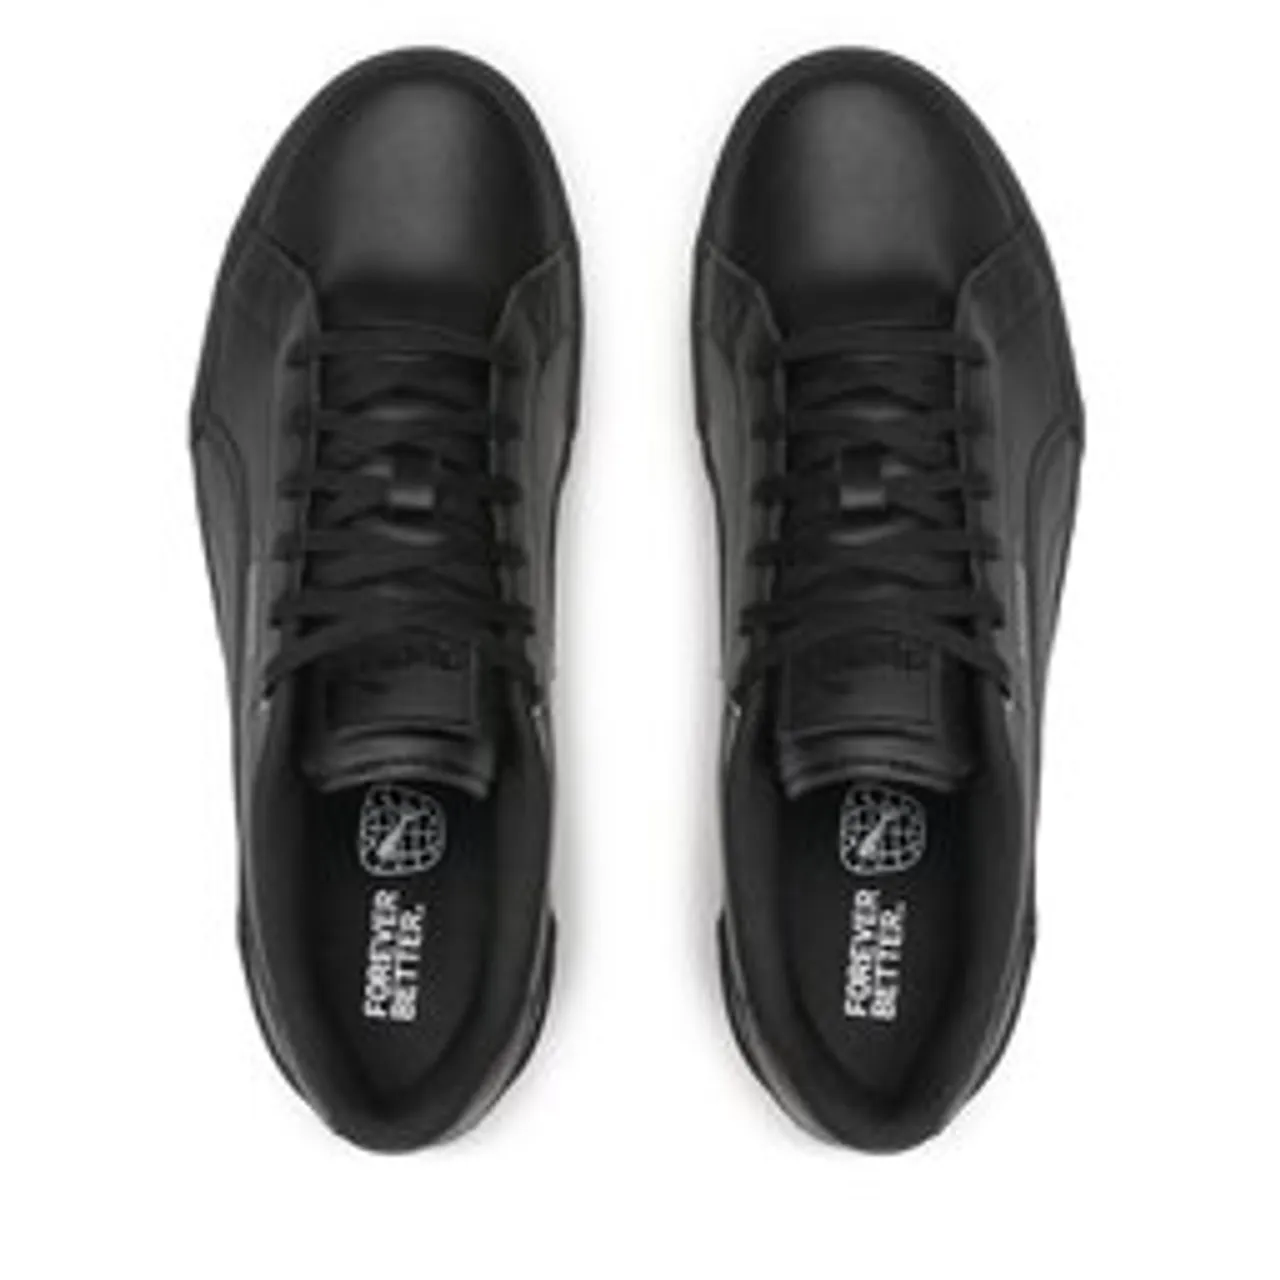 Sneakers Puma Karmen Wedge 390985 03 Black